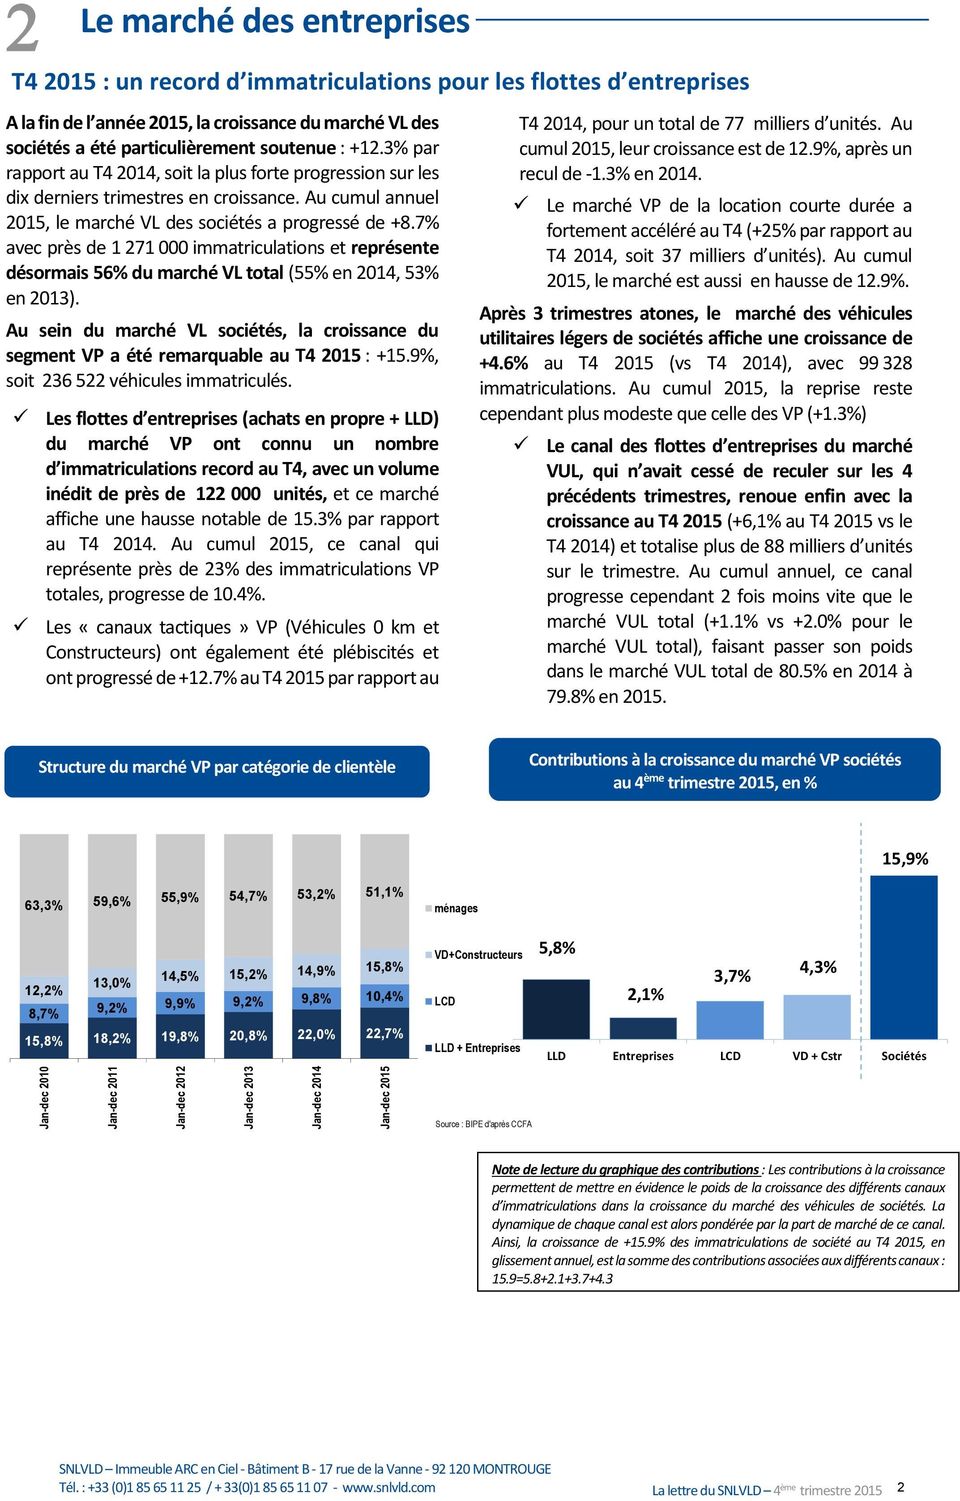 Au cumul annuel 2015, le marché VL des sociétés a progressé de +8.7% avec près de 1 271 000 immatriculations et représente désormais 56% du marché VL total (55% en 2014, 53% en 2013).